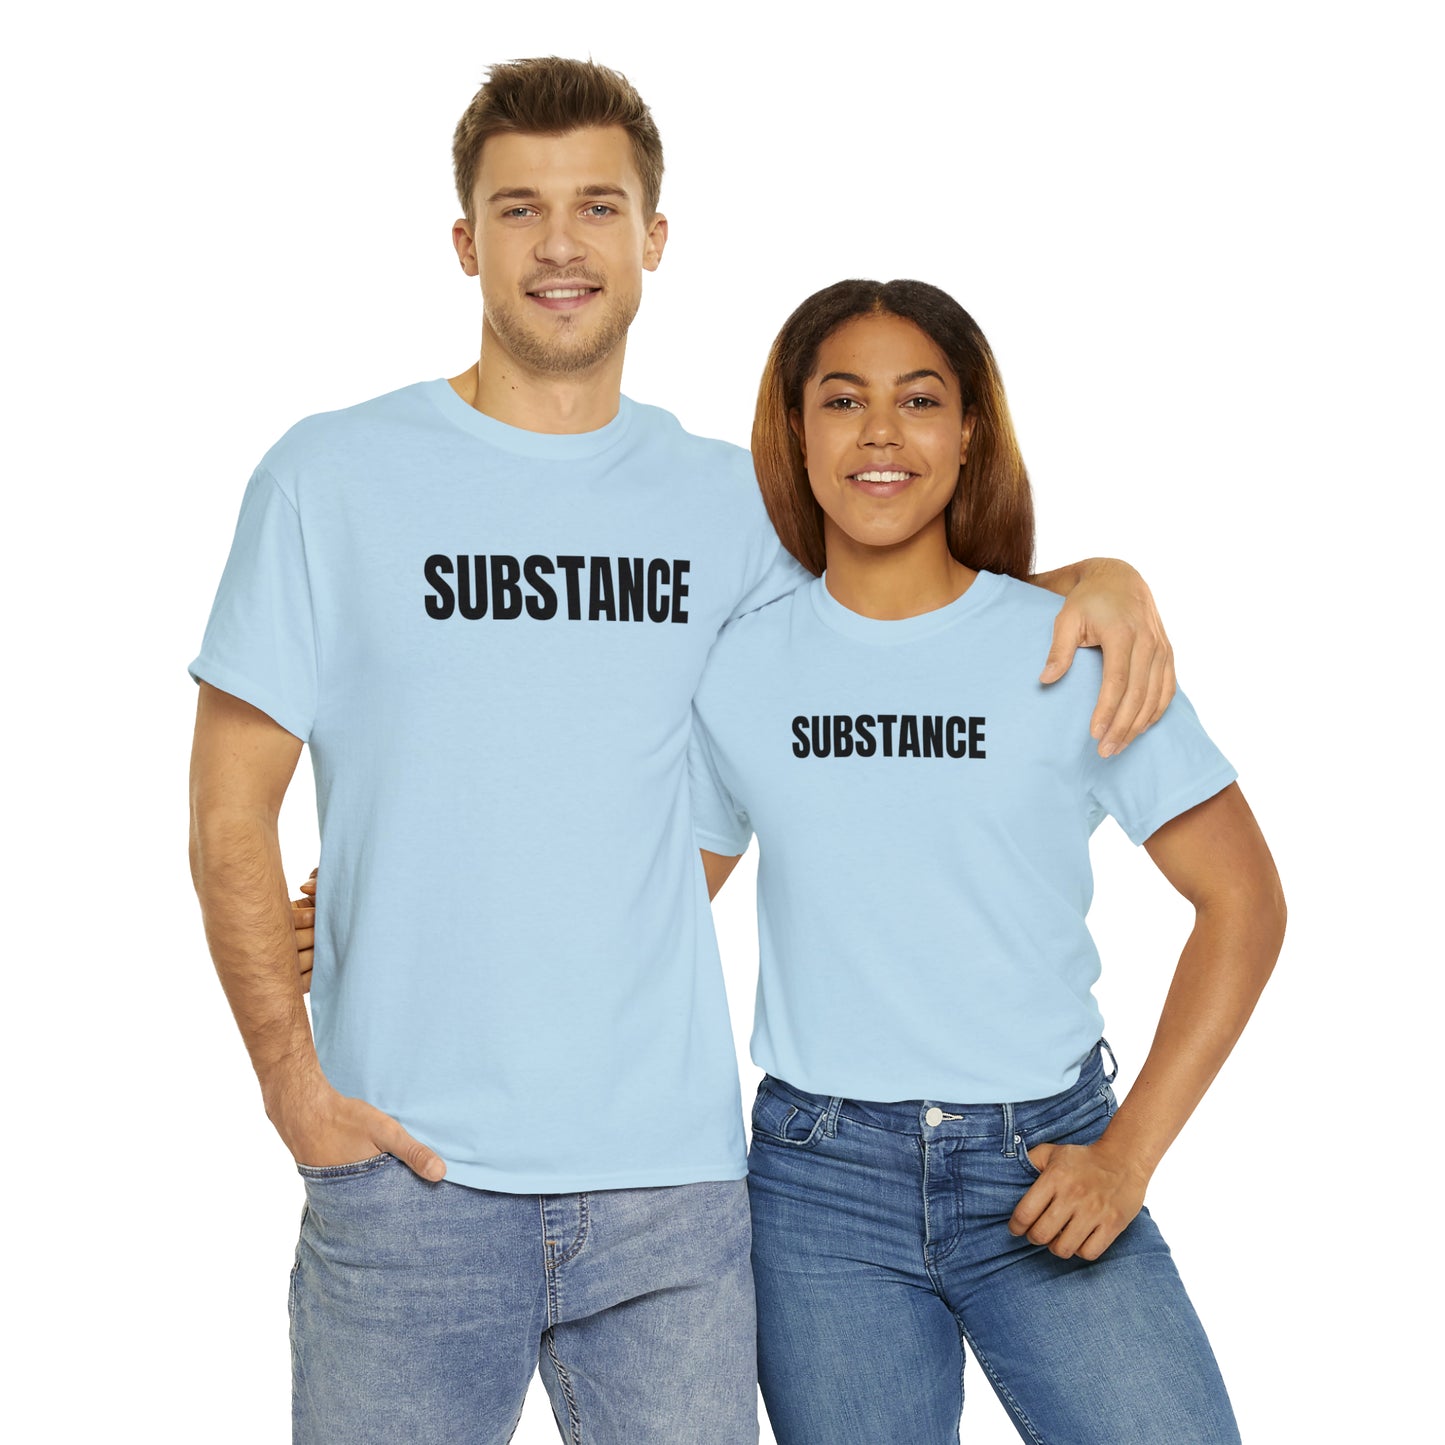 SUBSTANCE T-SHIRT